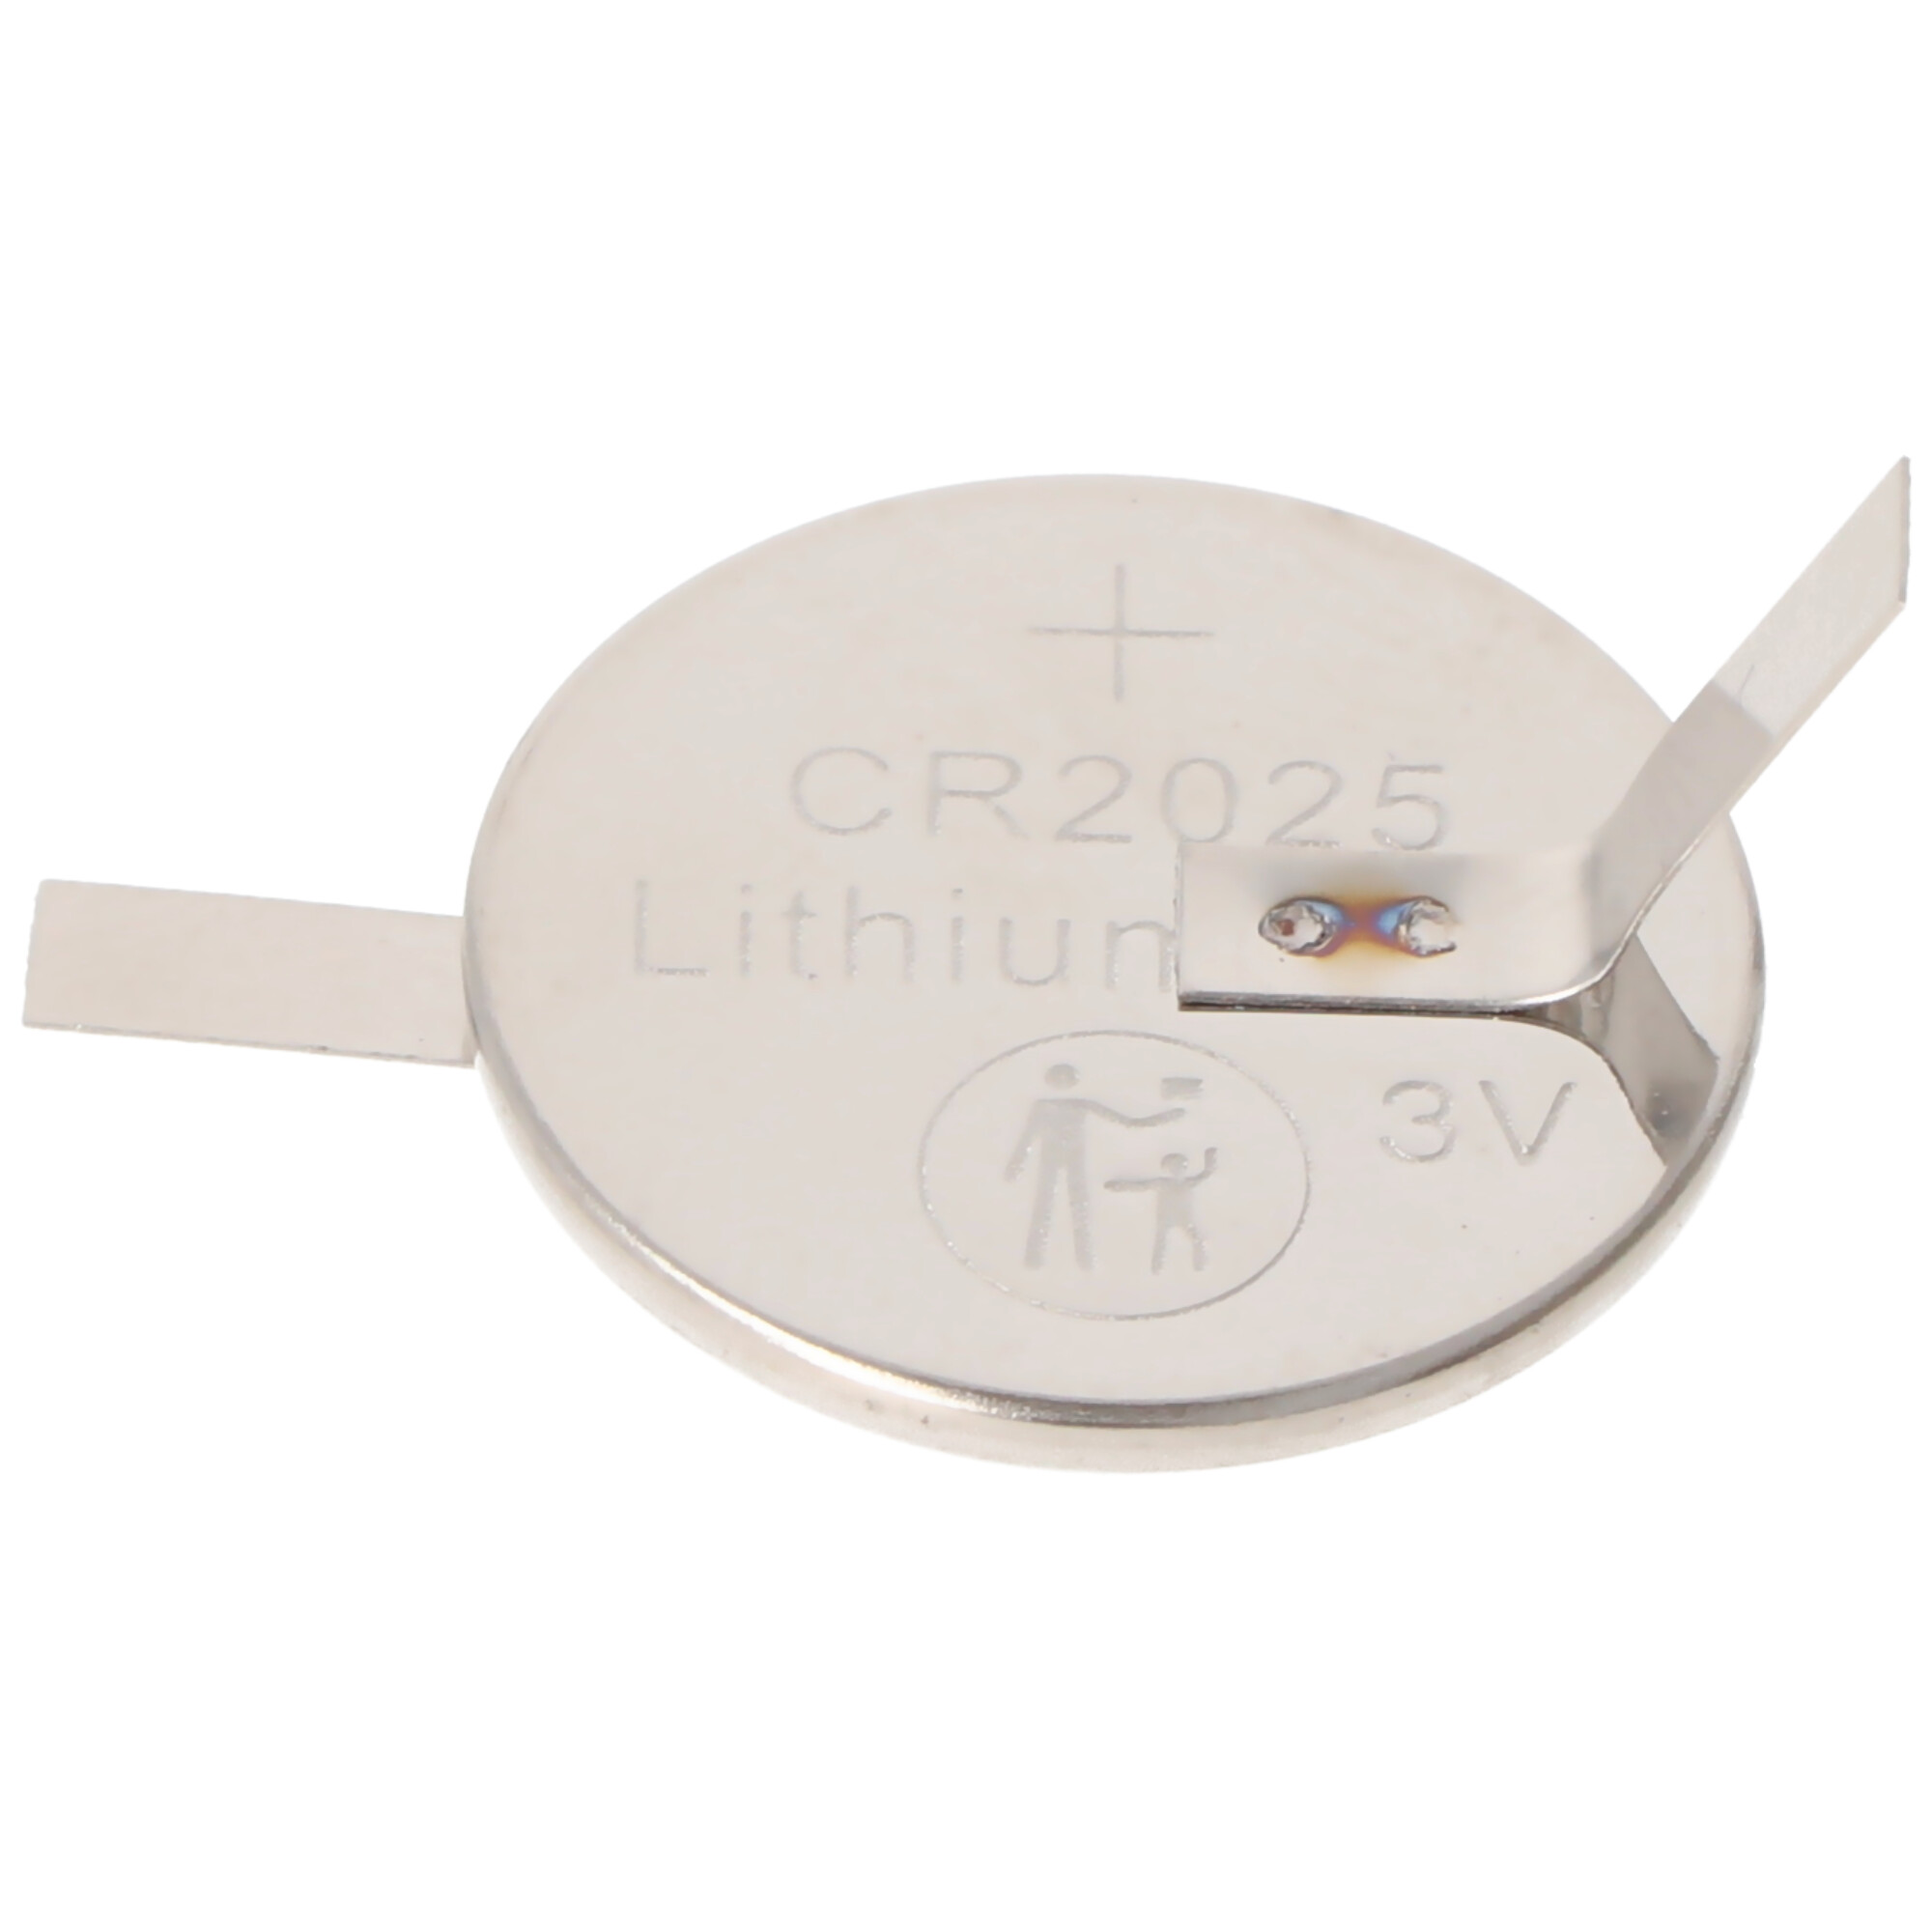 CR2025 Lithium Marken Batterie mit Lötfahnen in Z-Form